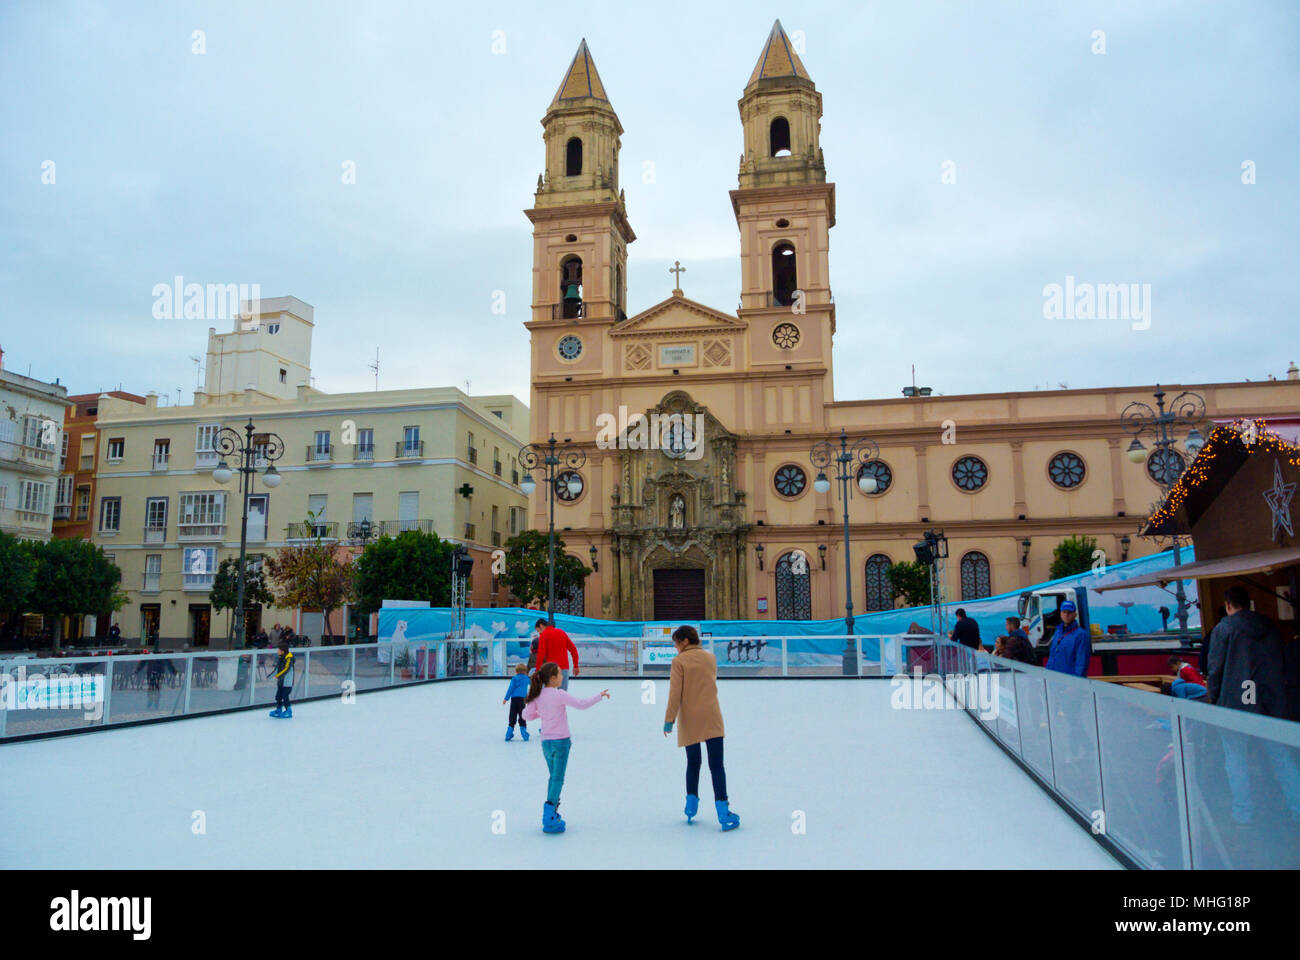 Ice skating rink, Plaza Fragela, Cadiz, Andalucia, Spain Stock Photo